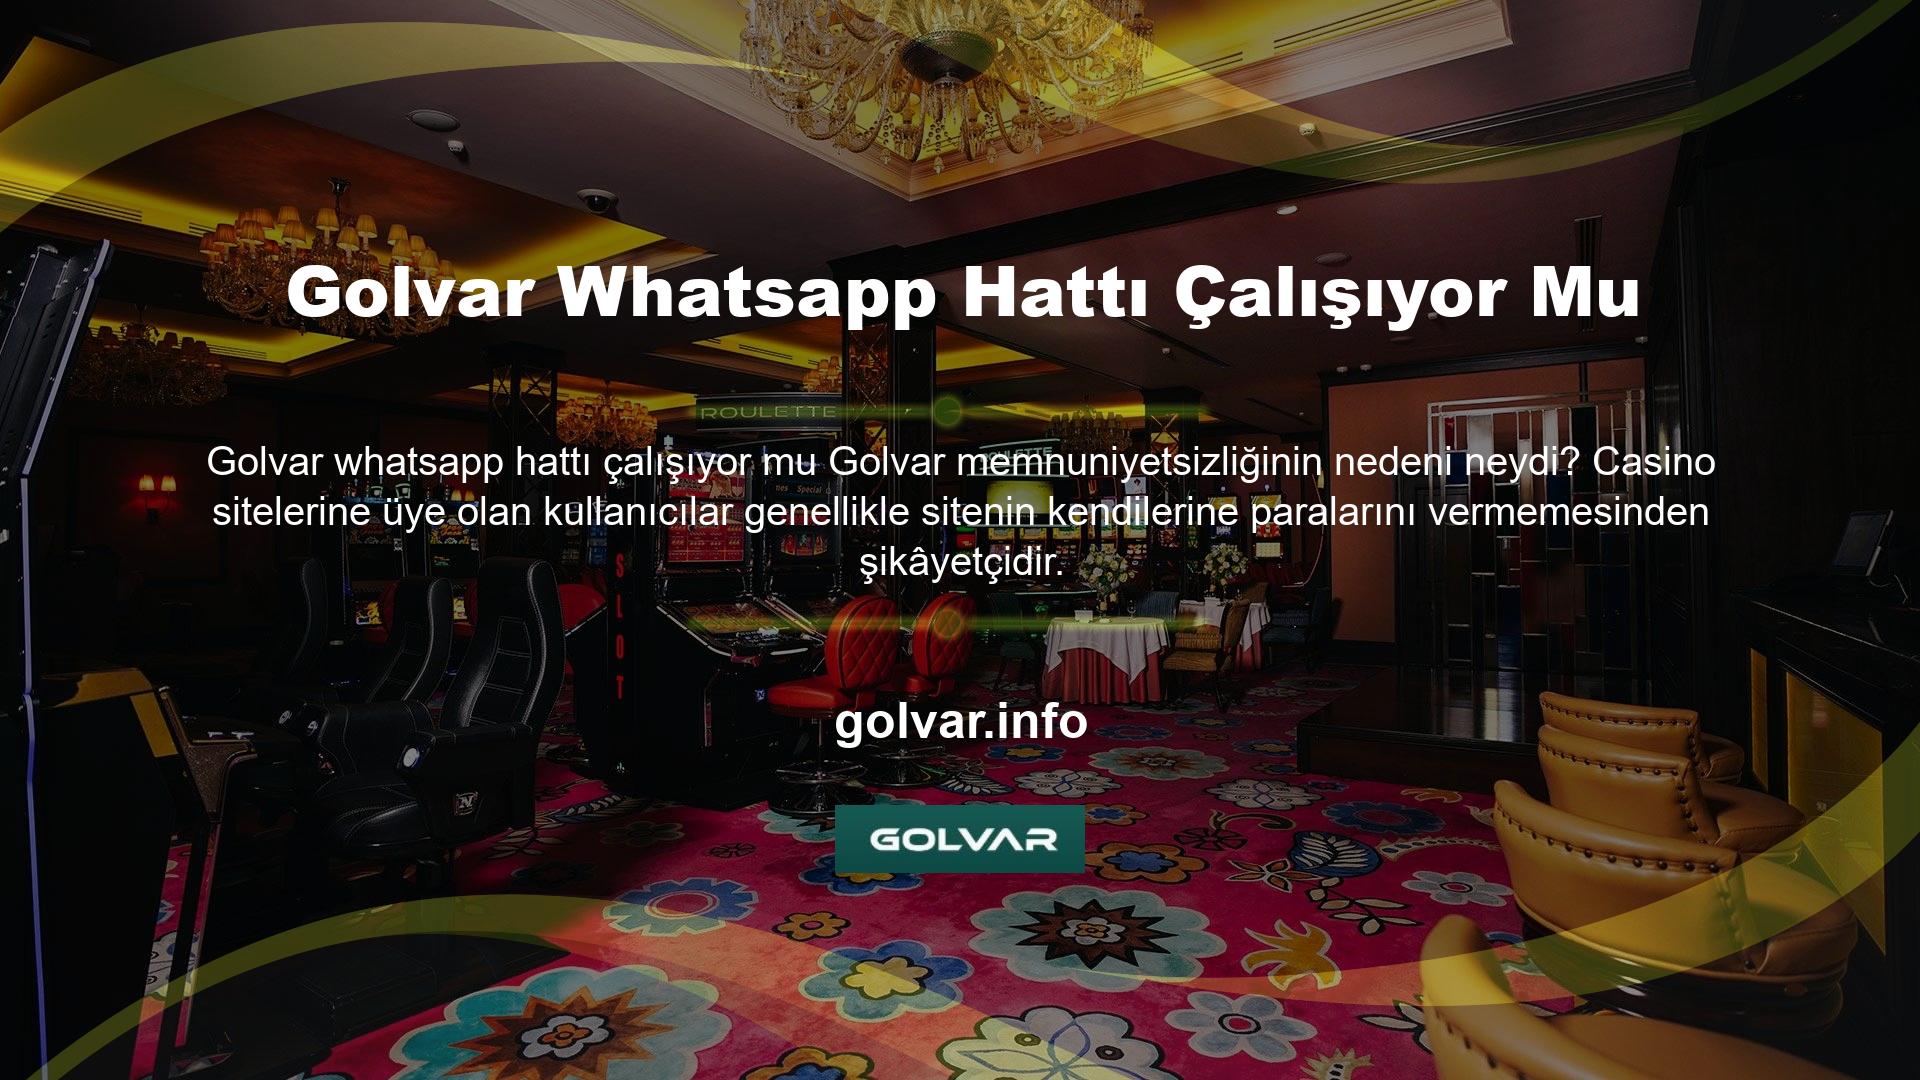 Golvar Gaming, çok sayıda bariz şikâyet alan bir oyun sitesidir